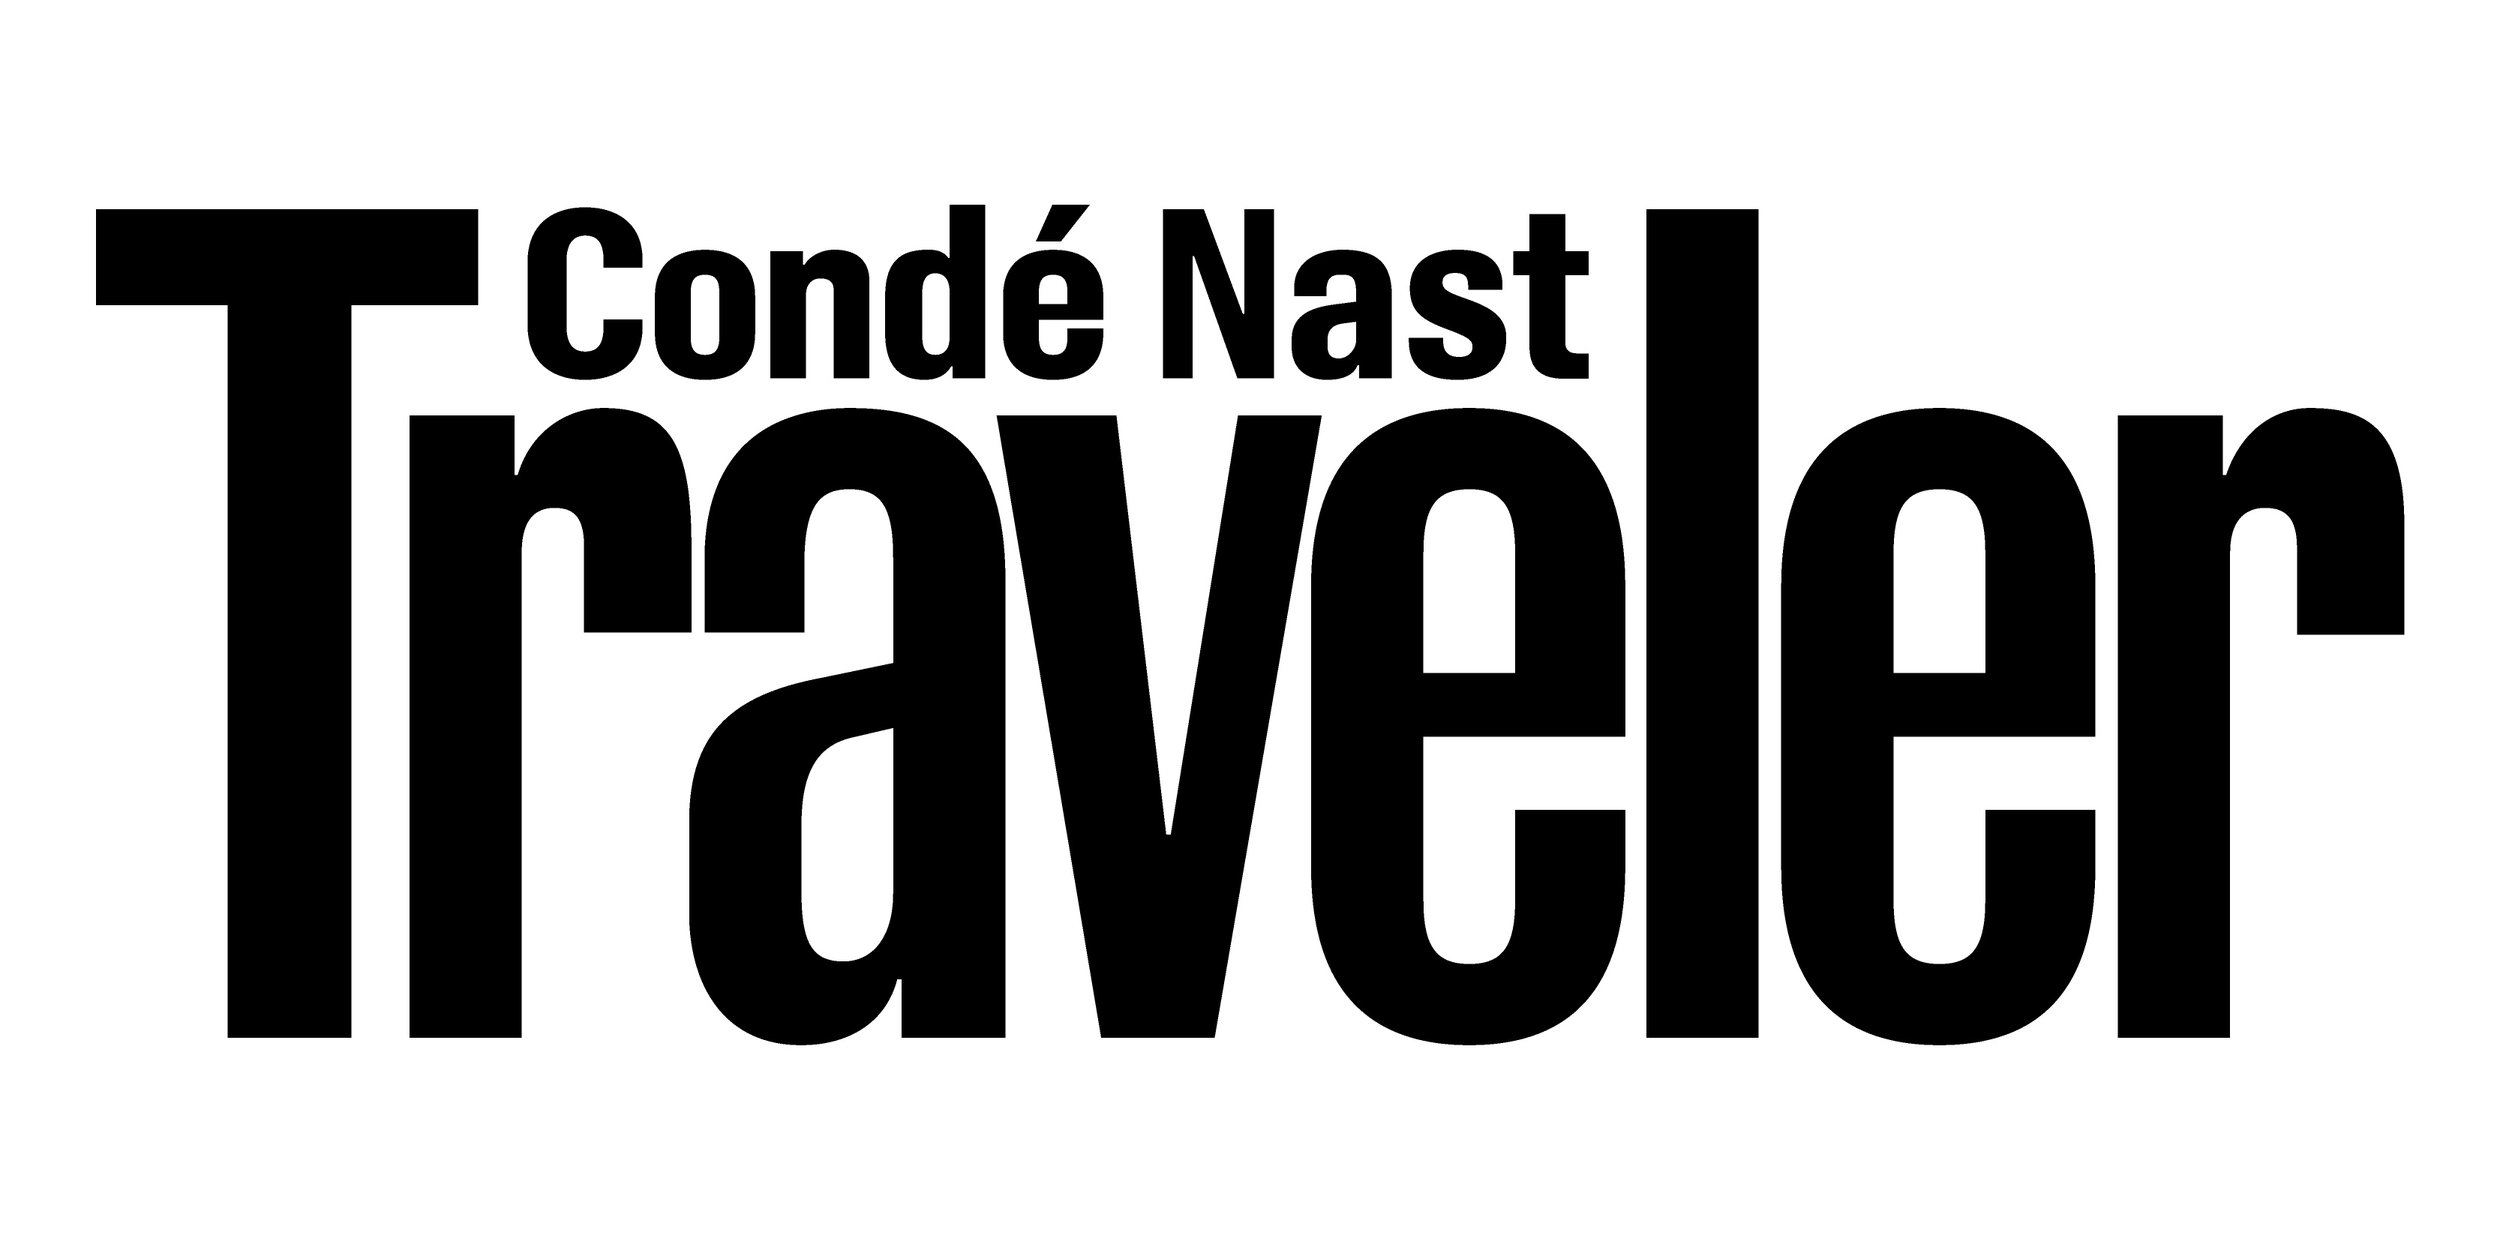 Condé_Nast_Traveler_logo.jpg